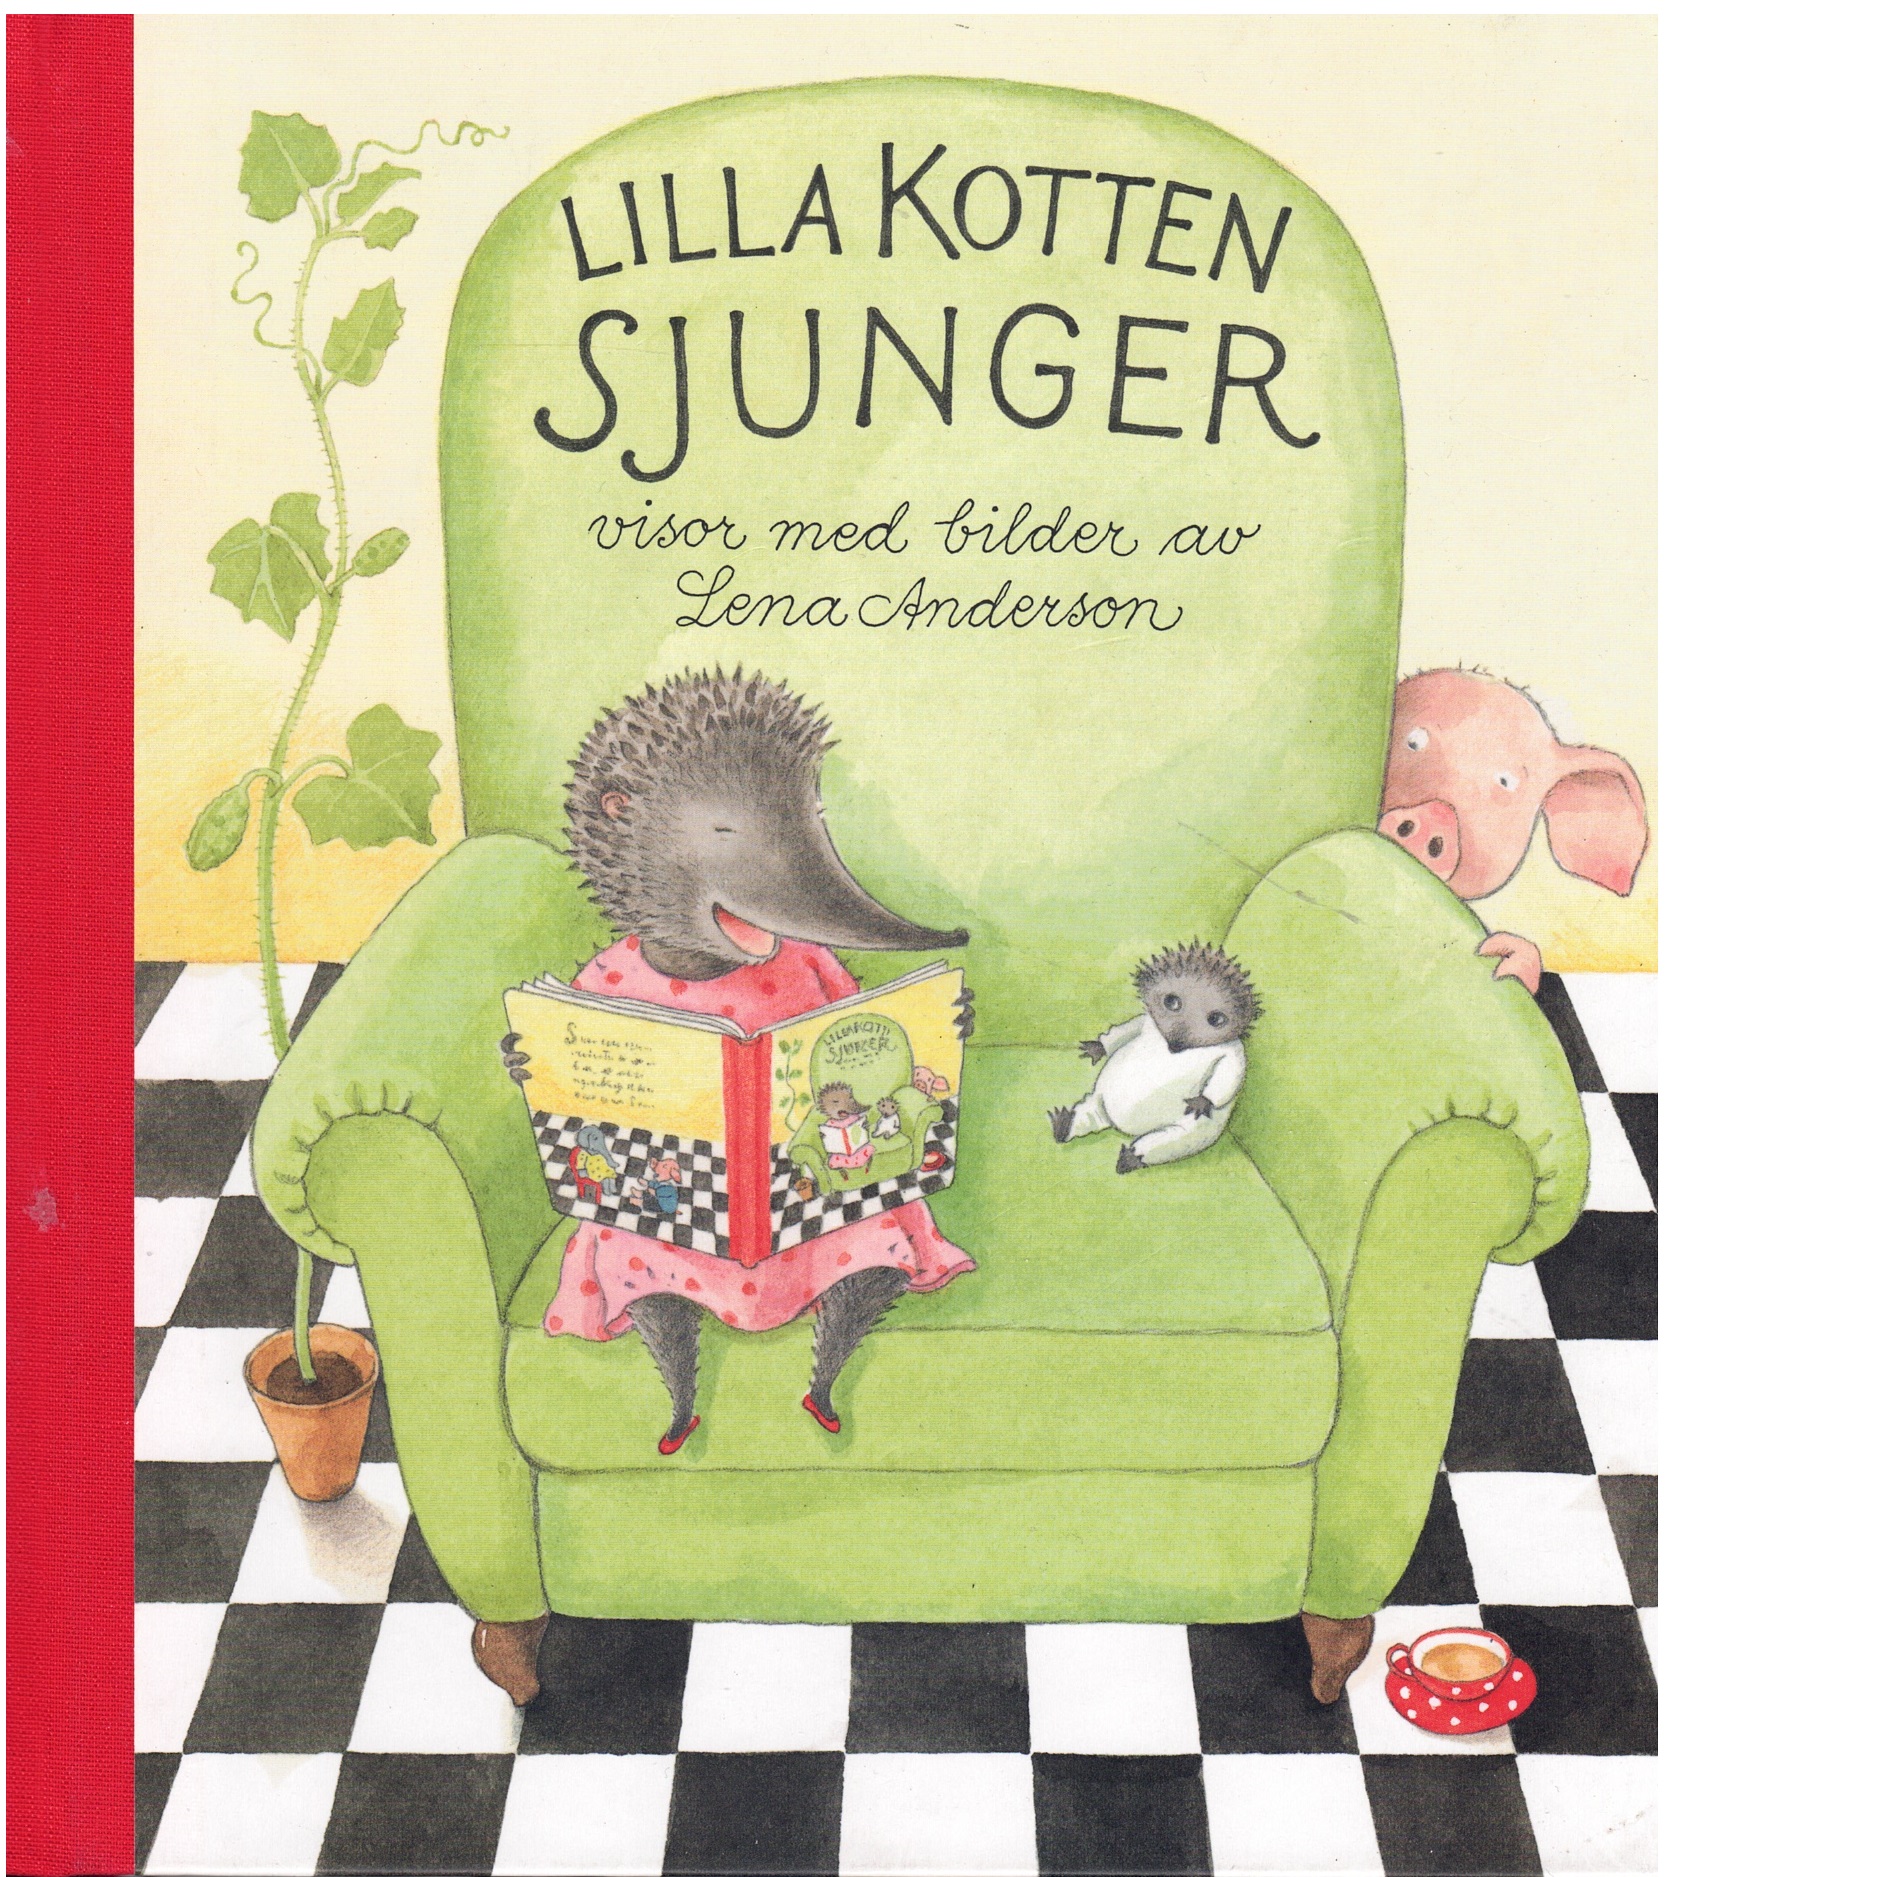 Lilla Kotten sjunger : en samling visor - Red.